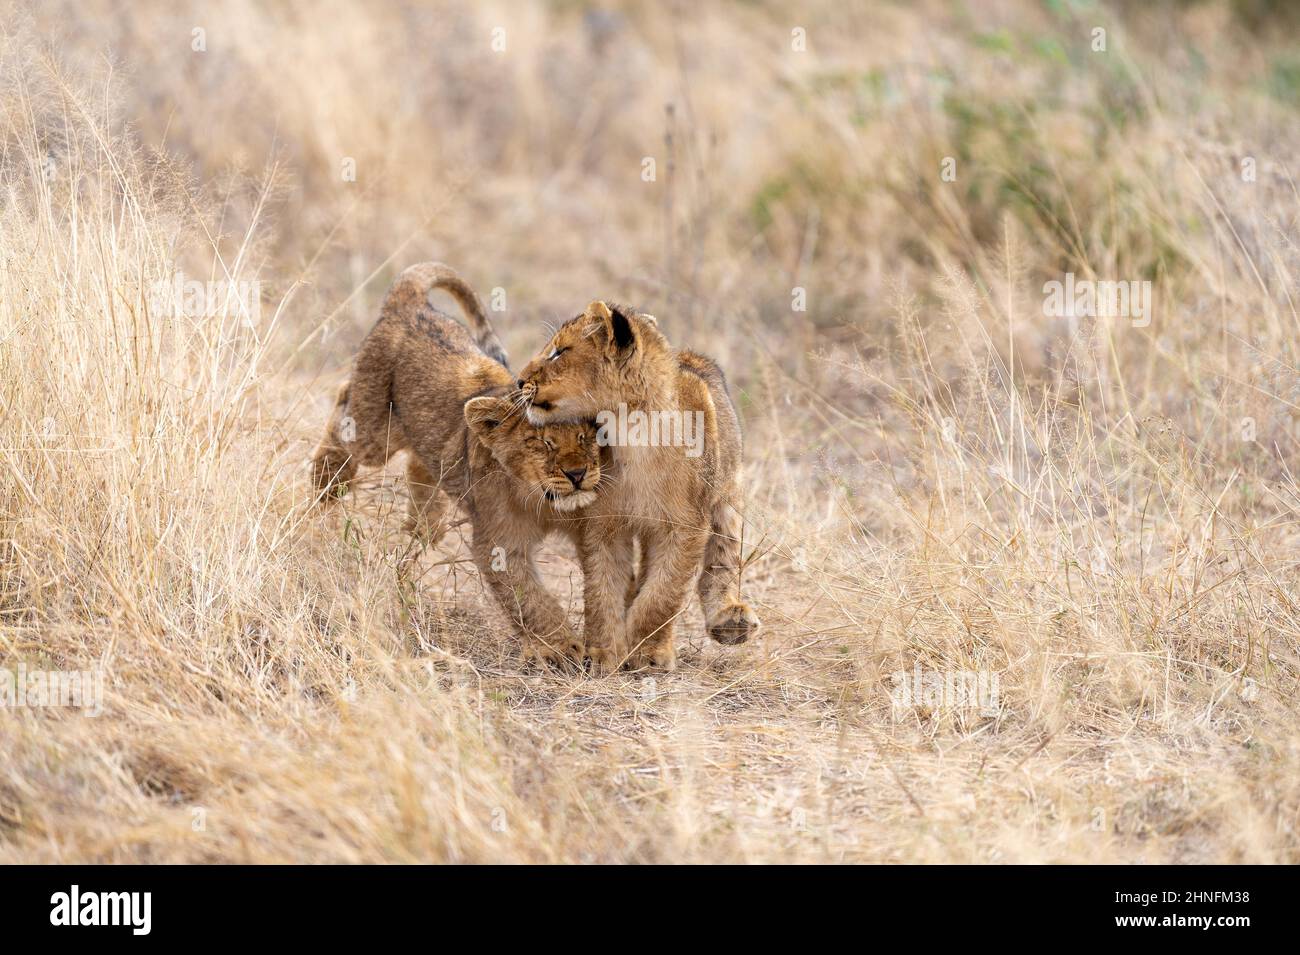 Lion (Panthera leo) Cubs en cours de jeu à travers la région, Londolozi Game Reserve, Afrique du Sud Banque D'Images